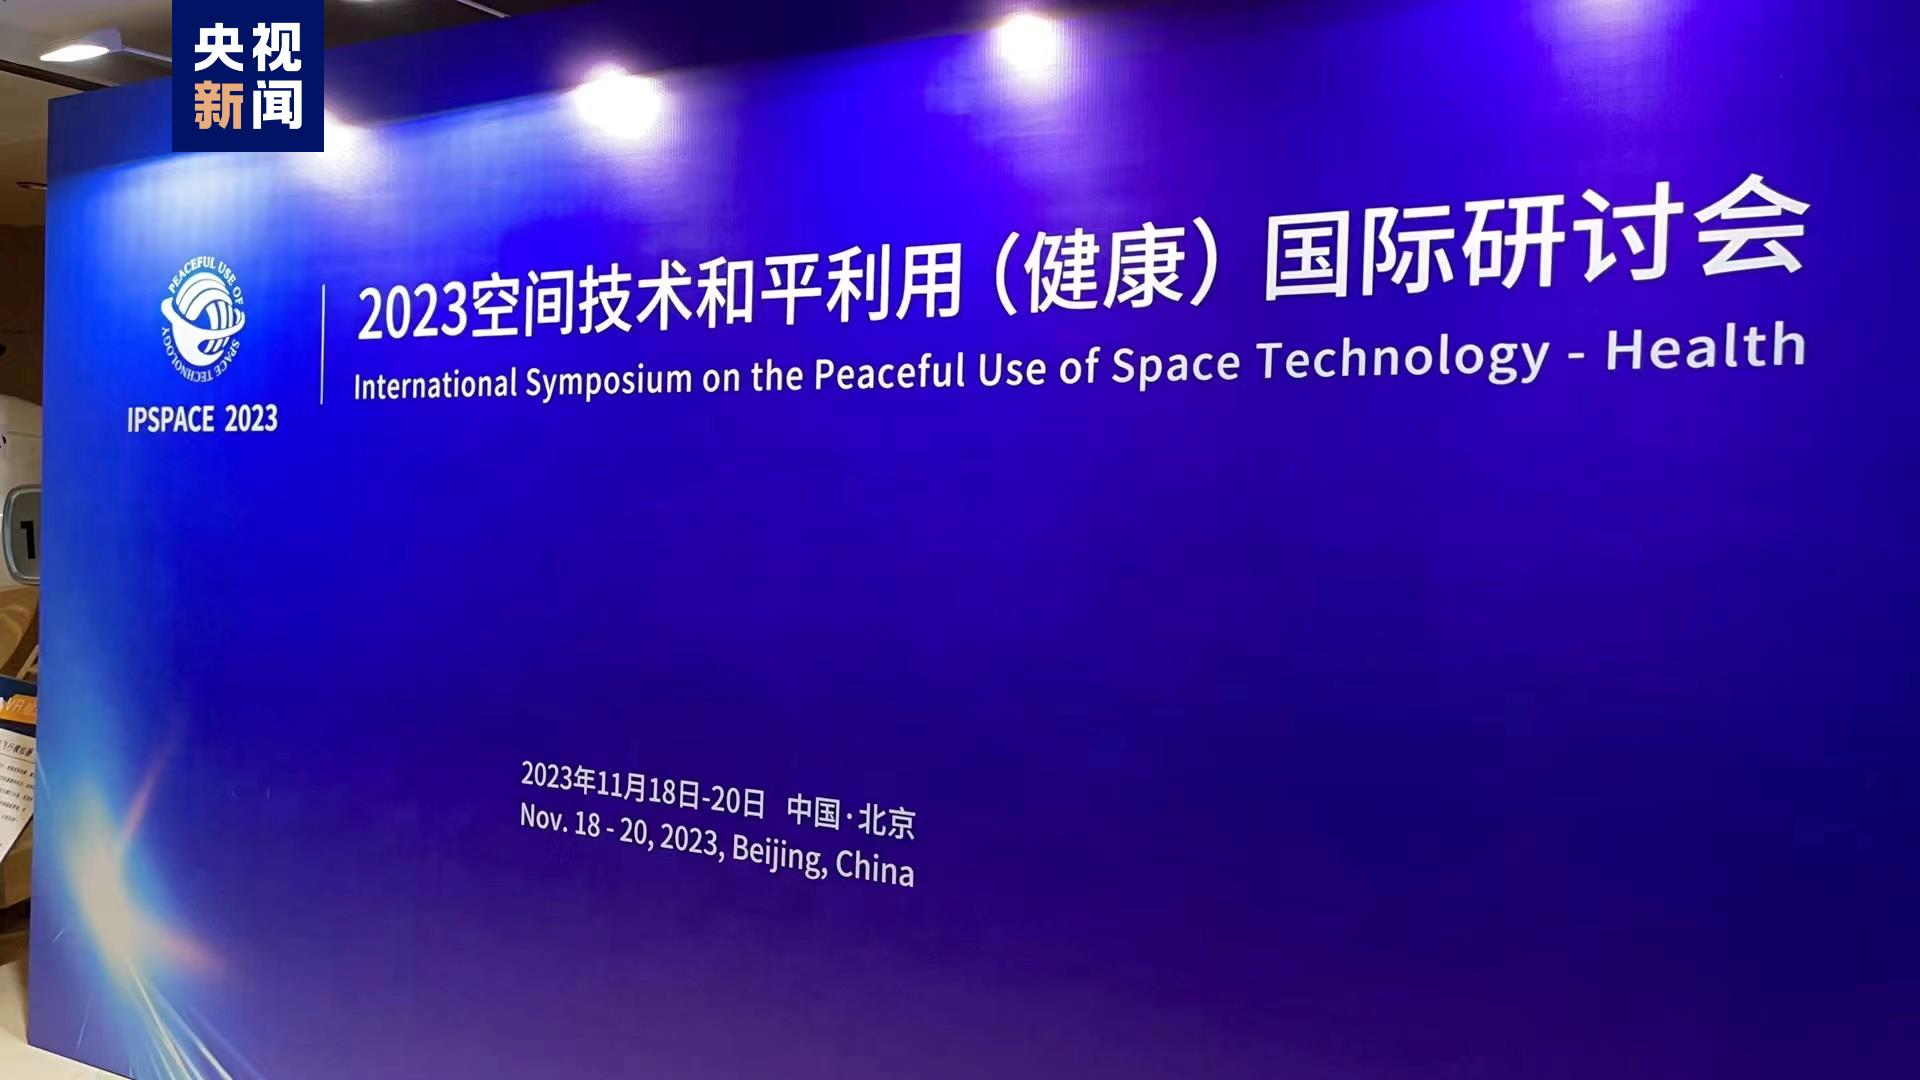 चीनद्वारा ५० भन्दा बढी मुलुक र अन्तर्राष्ट्रिय संगठनसँग अन्तरिक्ष सम्बन्धी अन्तर्राष्ट्रिय सहकार्य